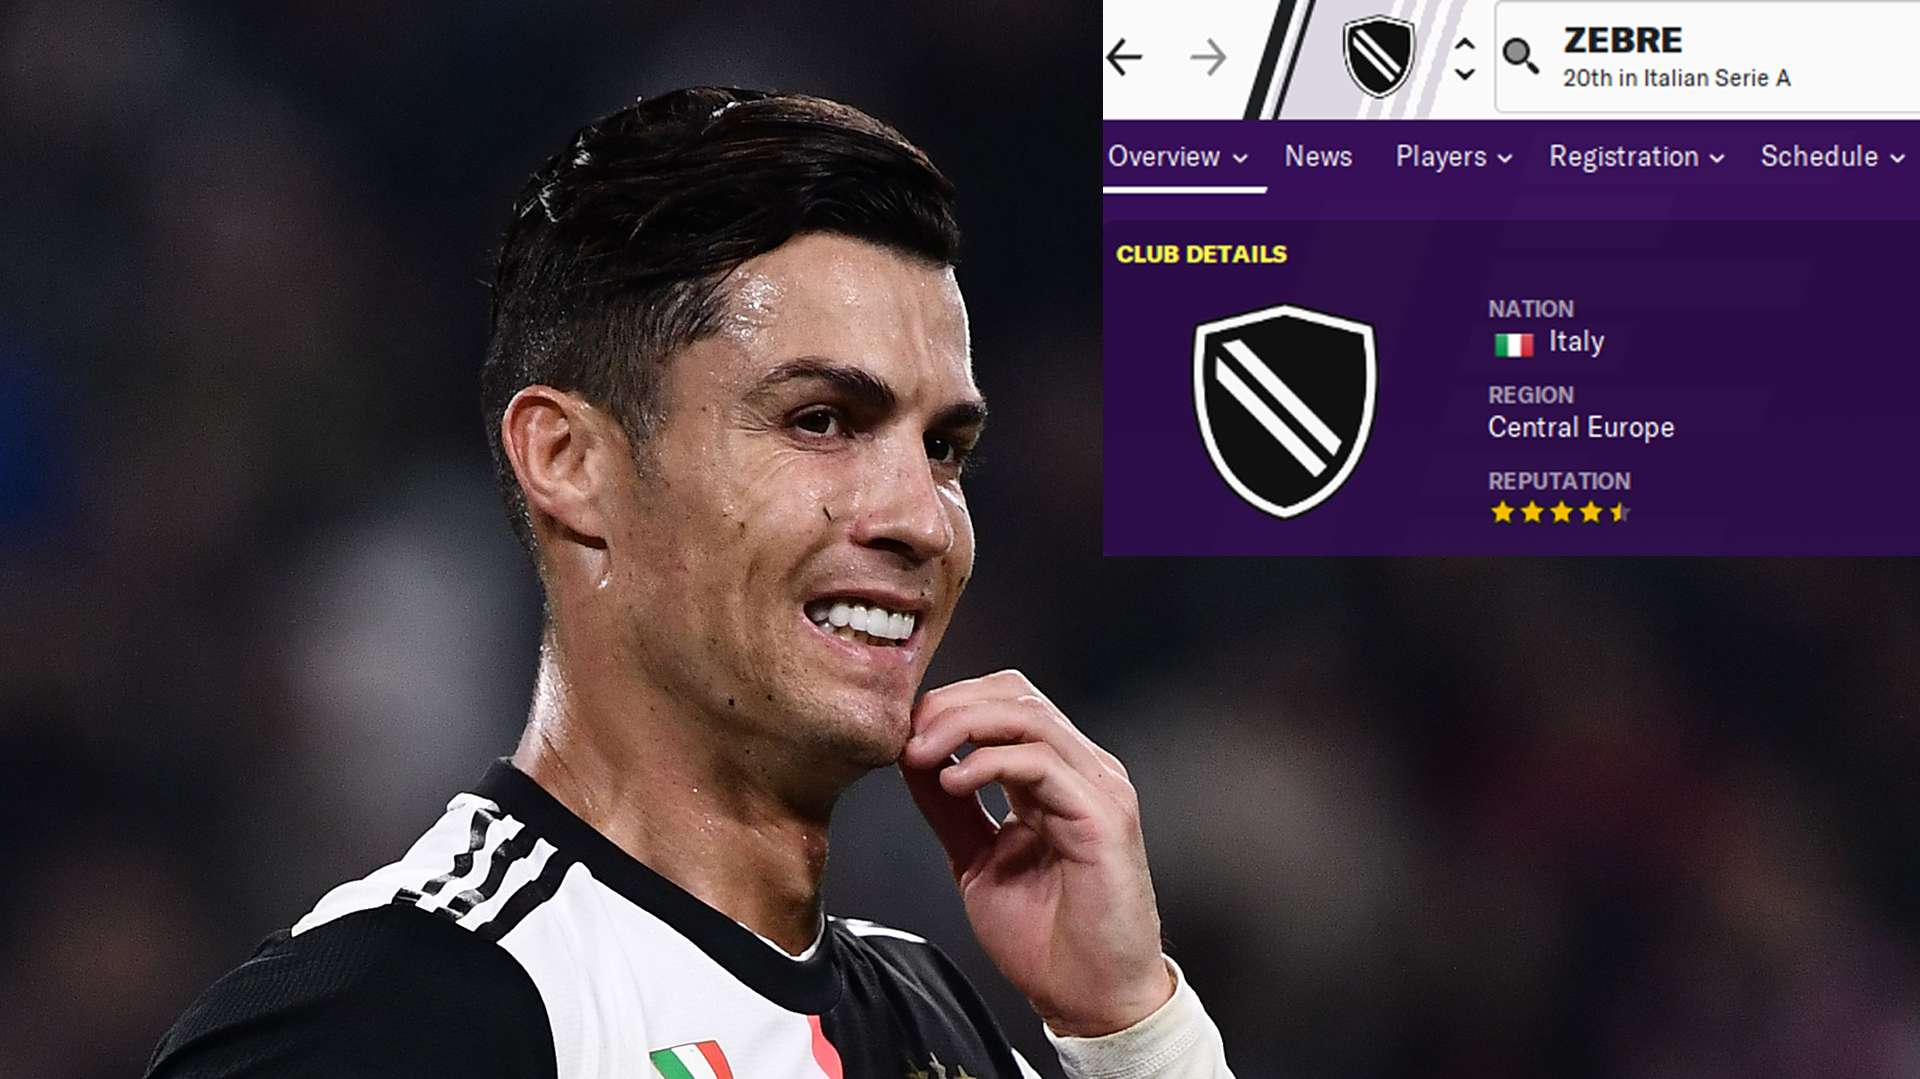 Ronaldo Football Manager 2020 Zebre